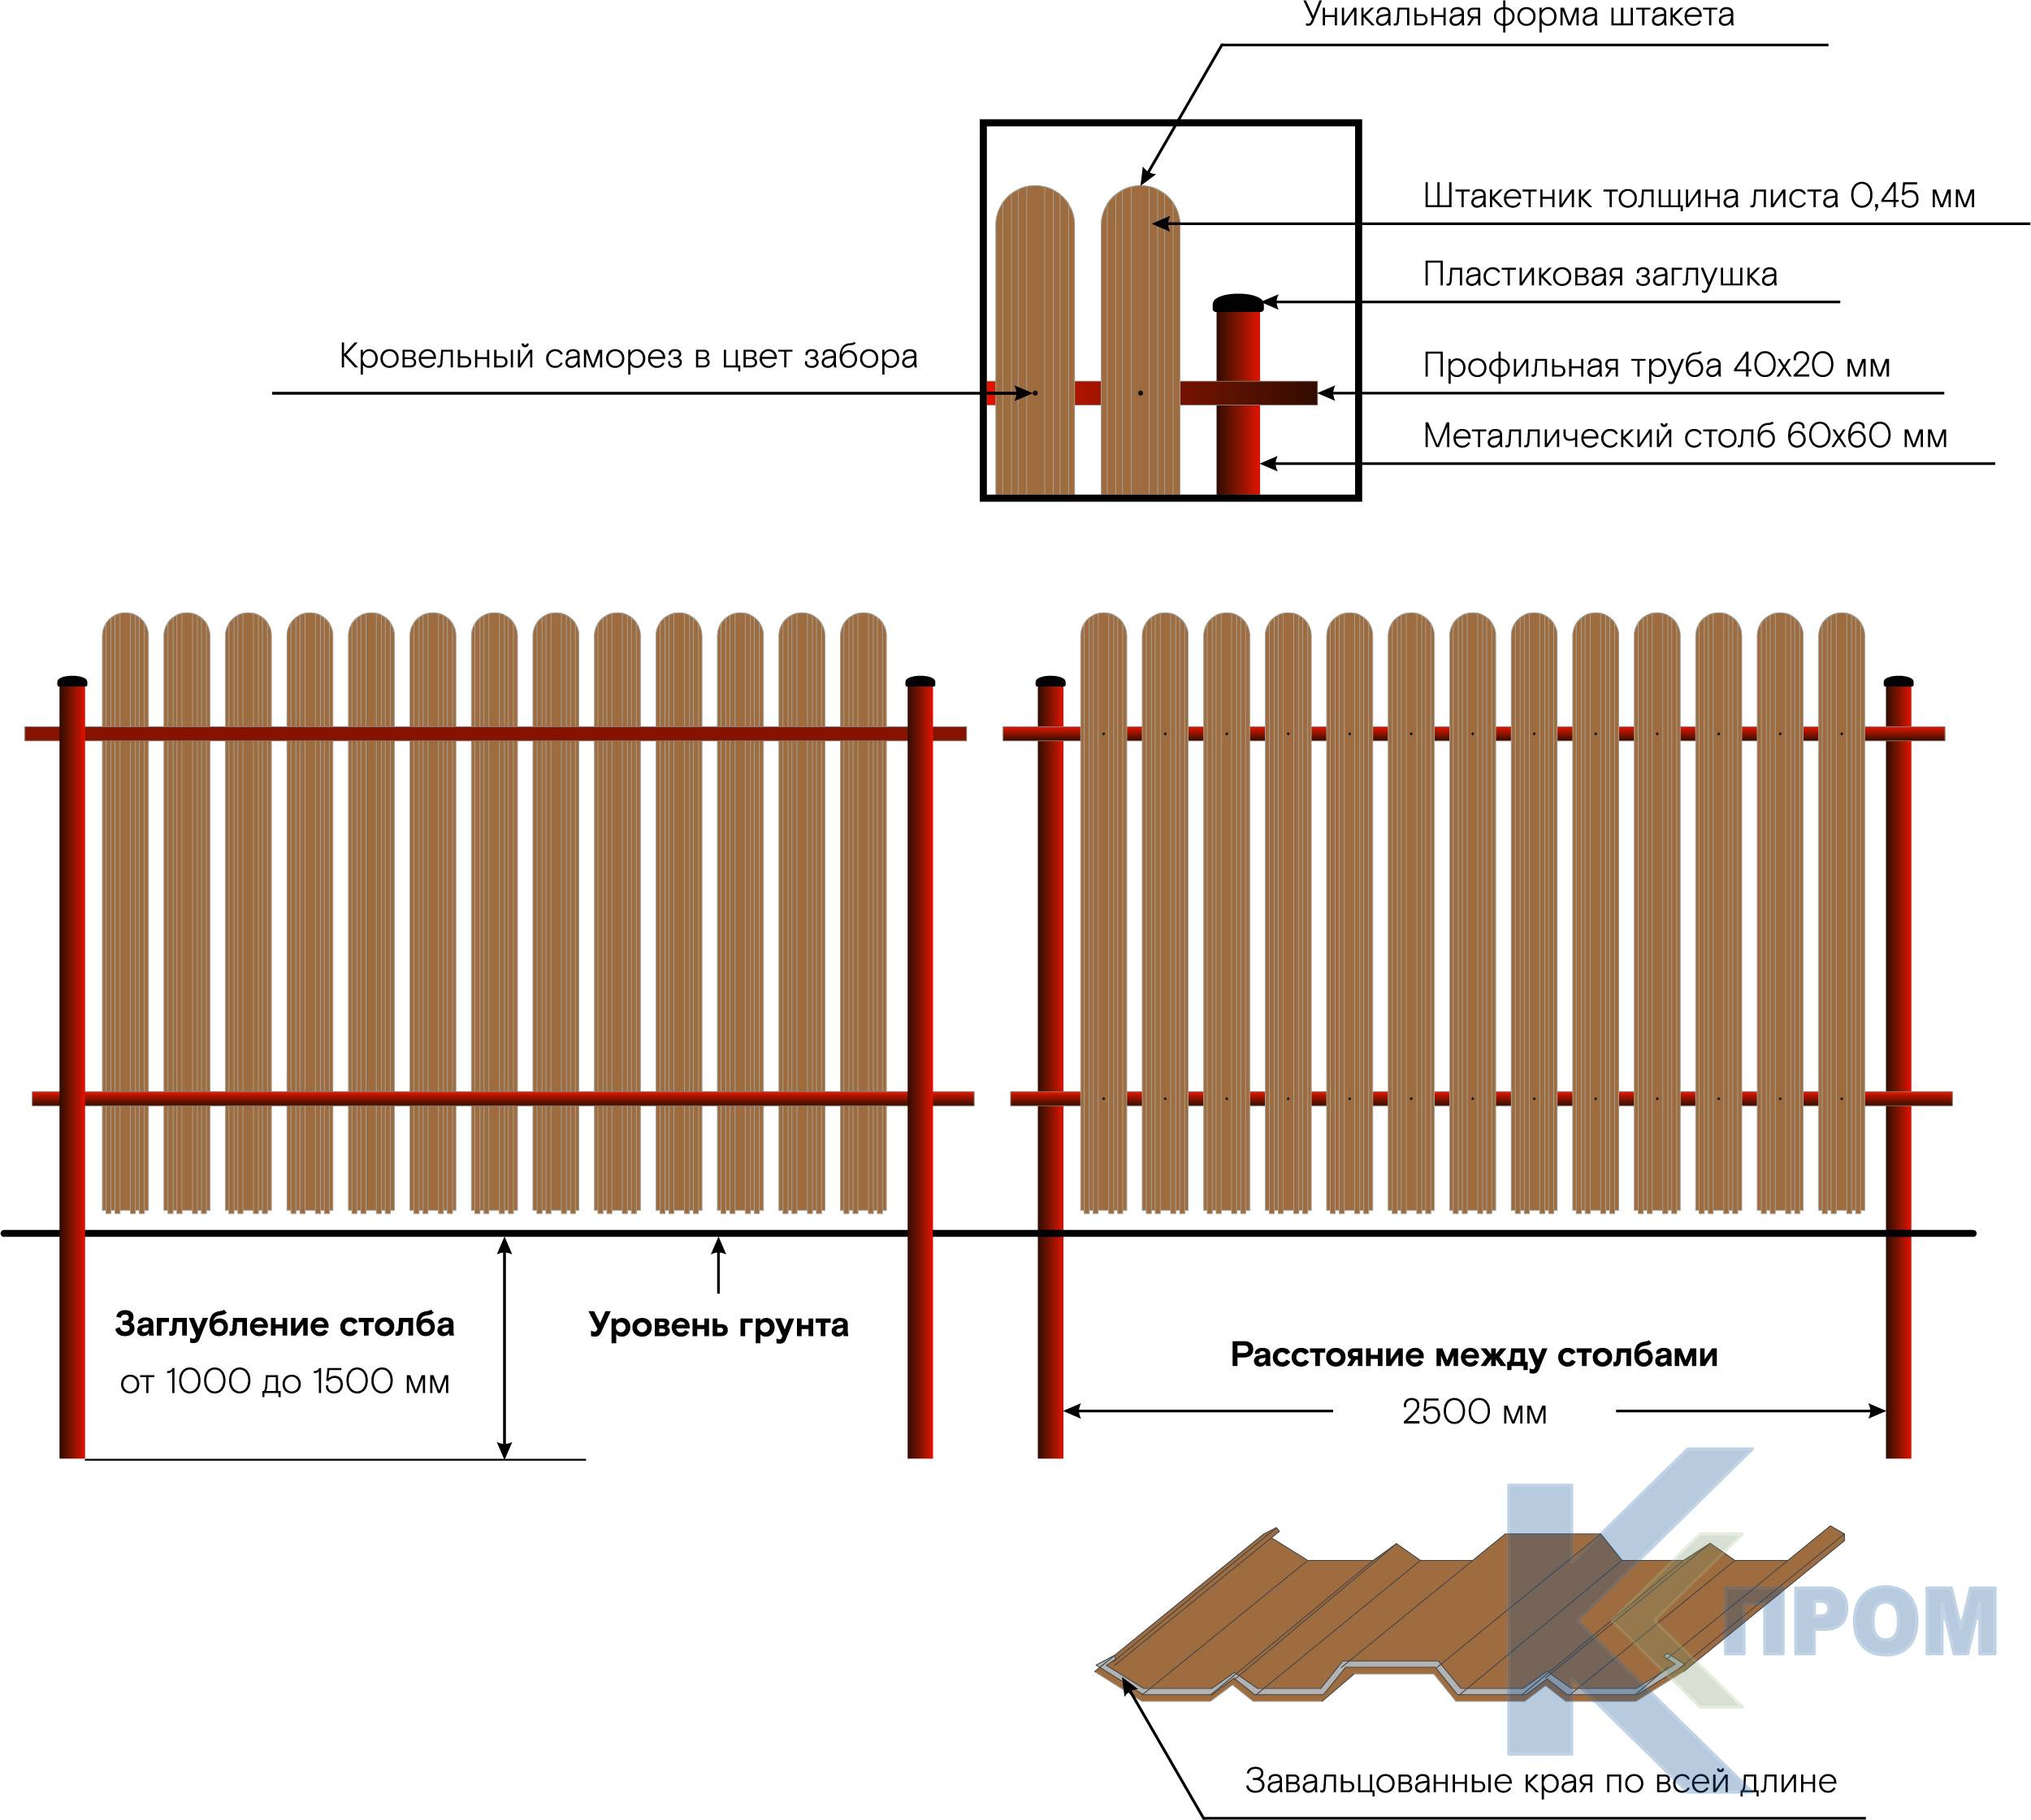 Забор из деревянного штакетника своими руками для дачи: чертеж, крепление к металлическим лагам